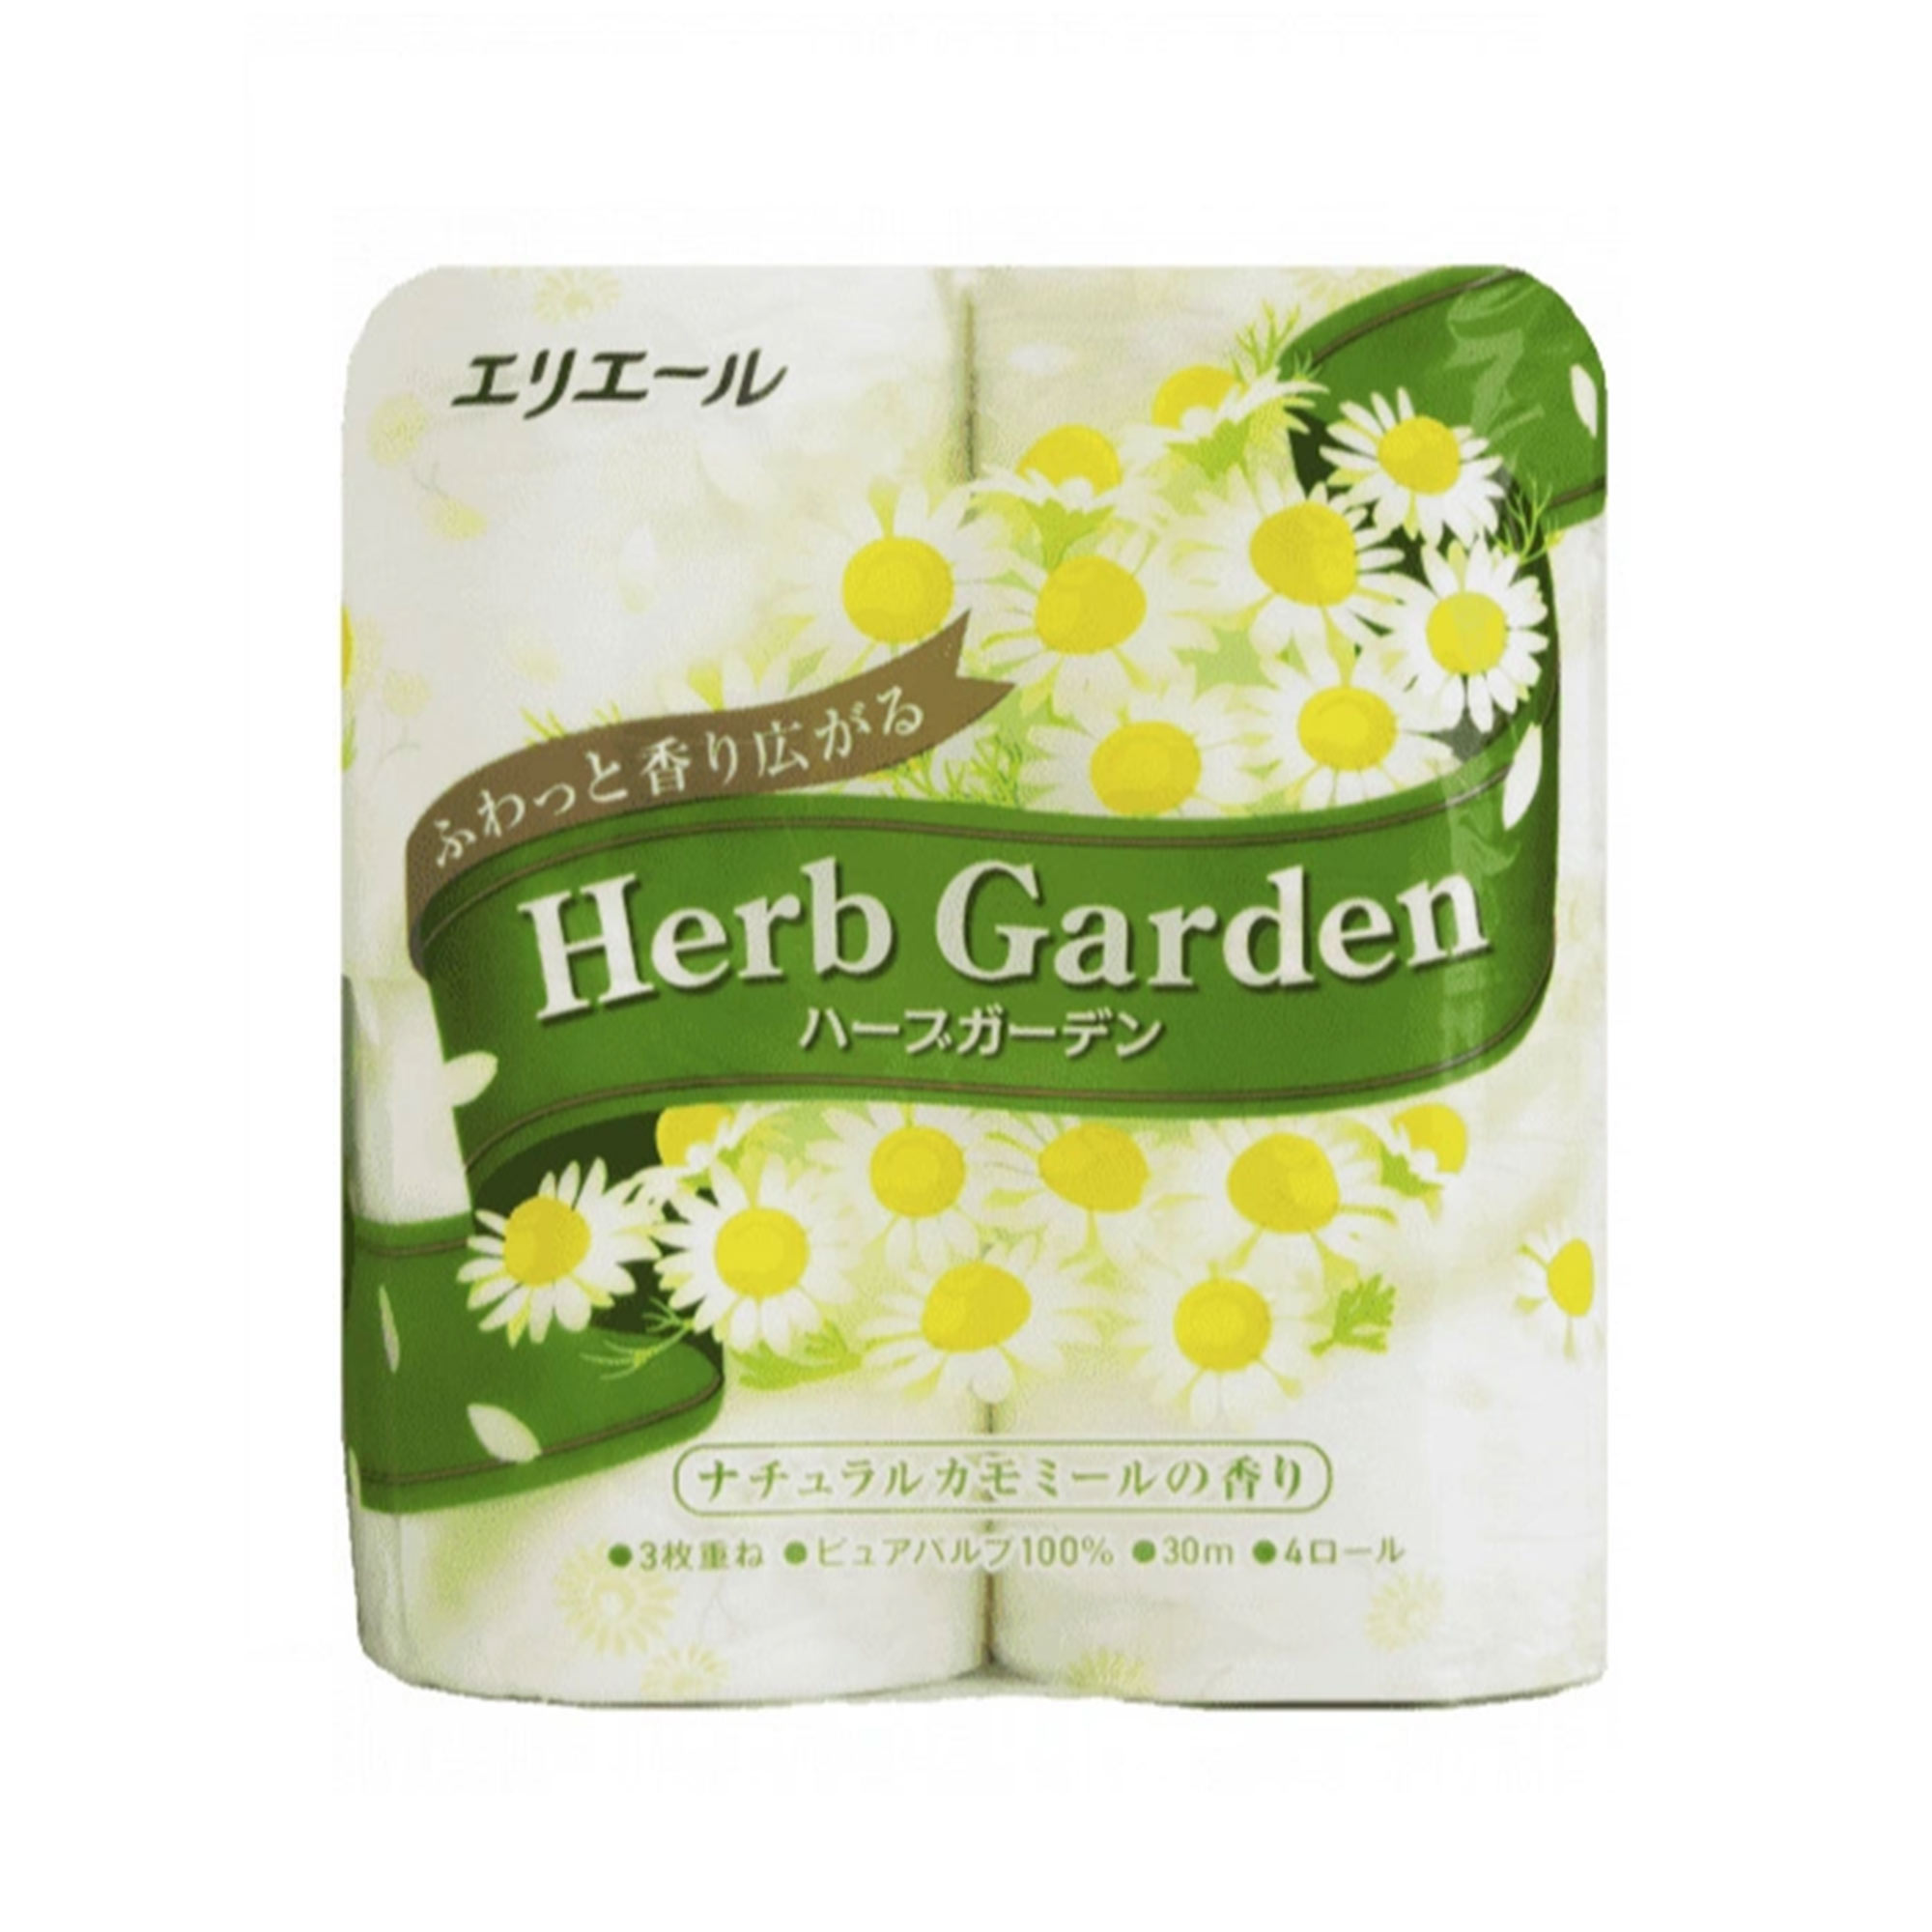 фото Туалетная бумага elleair herb garden ромашка трехслойная 4x30 м